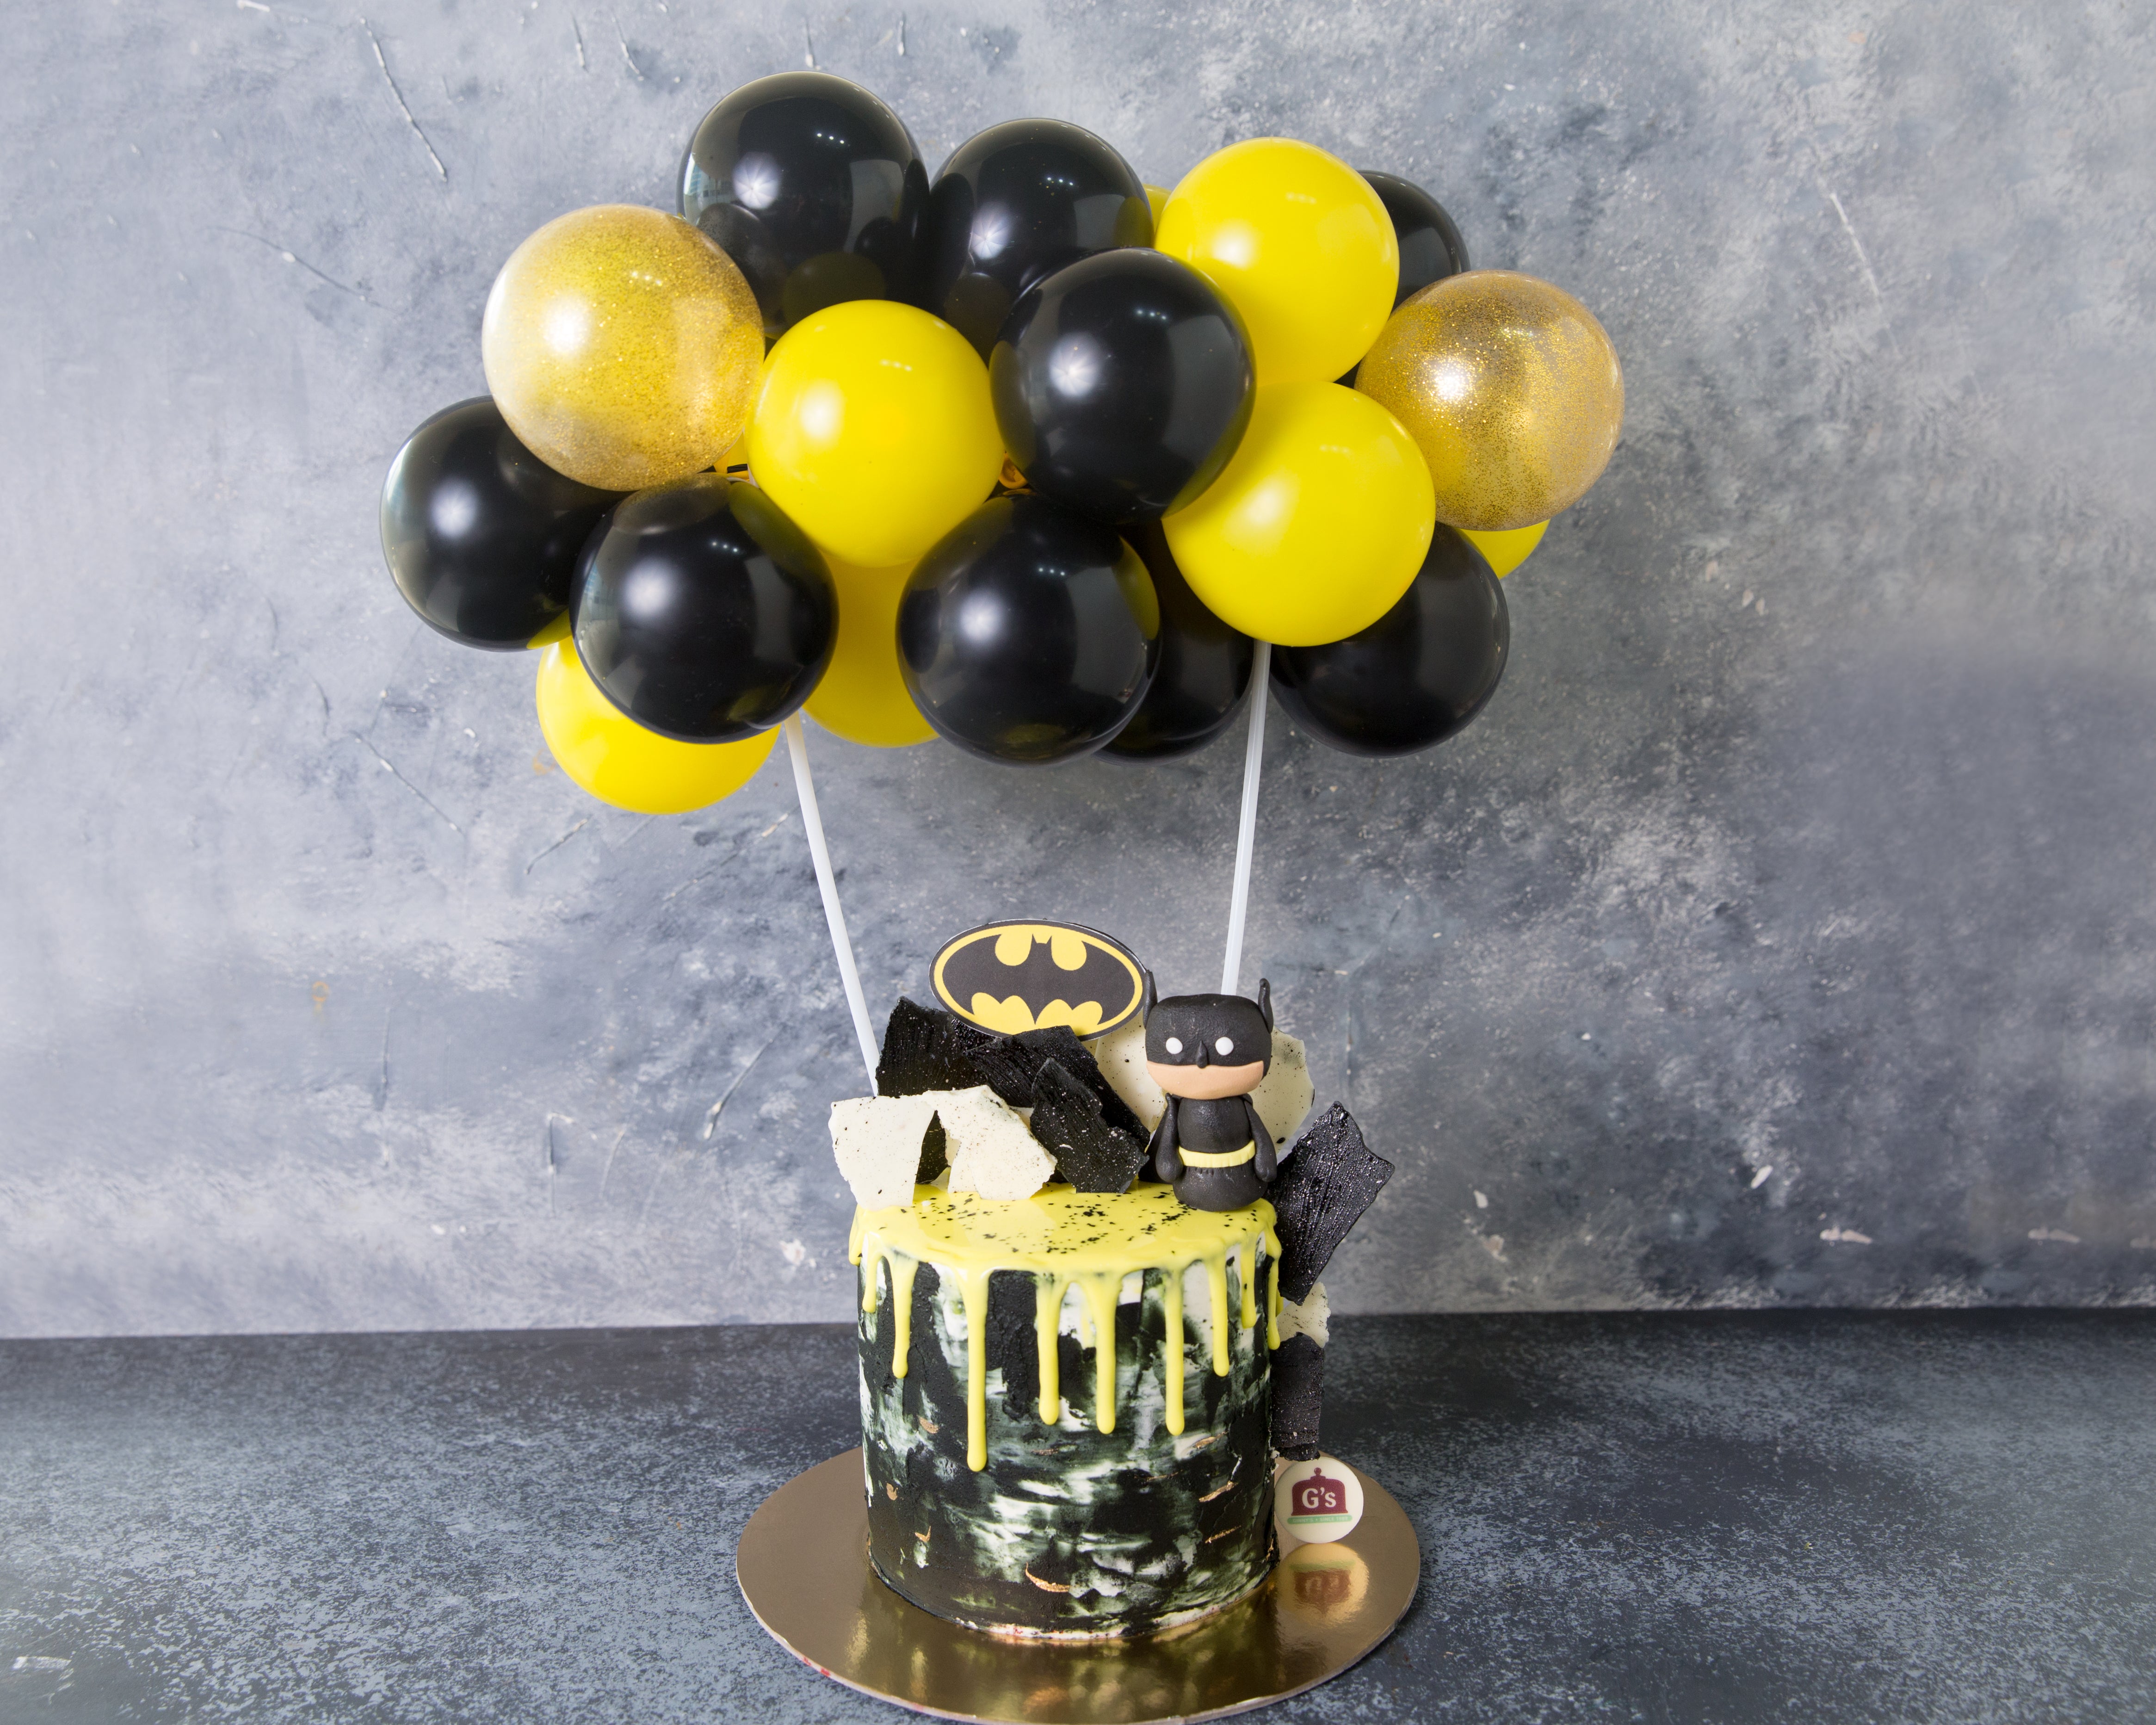 Batman Balloon Cake